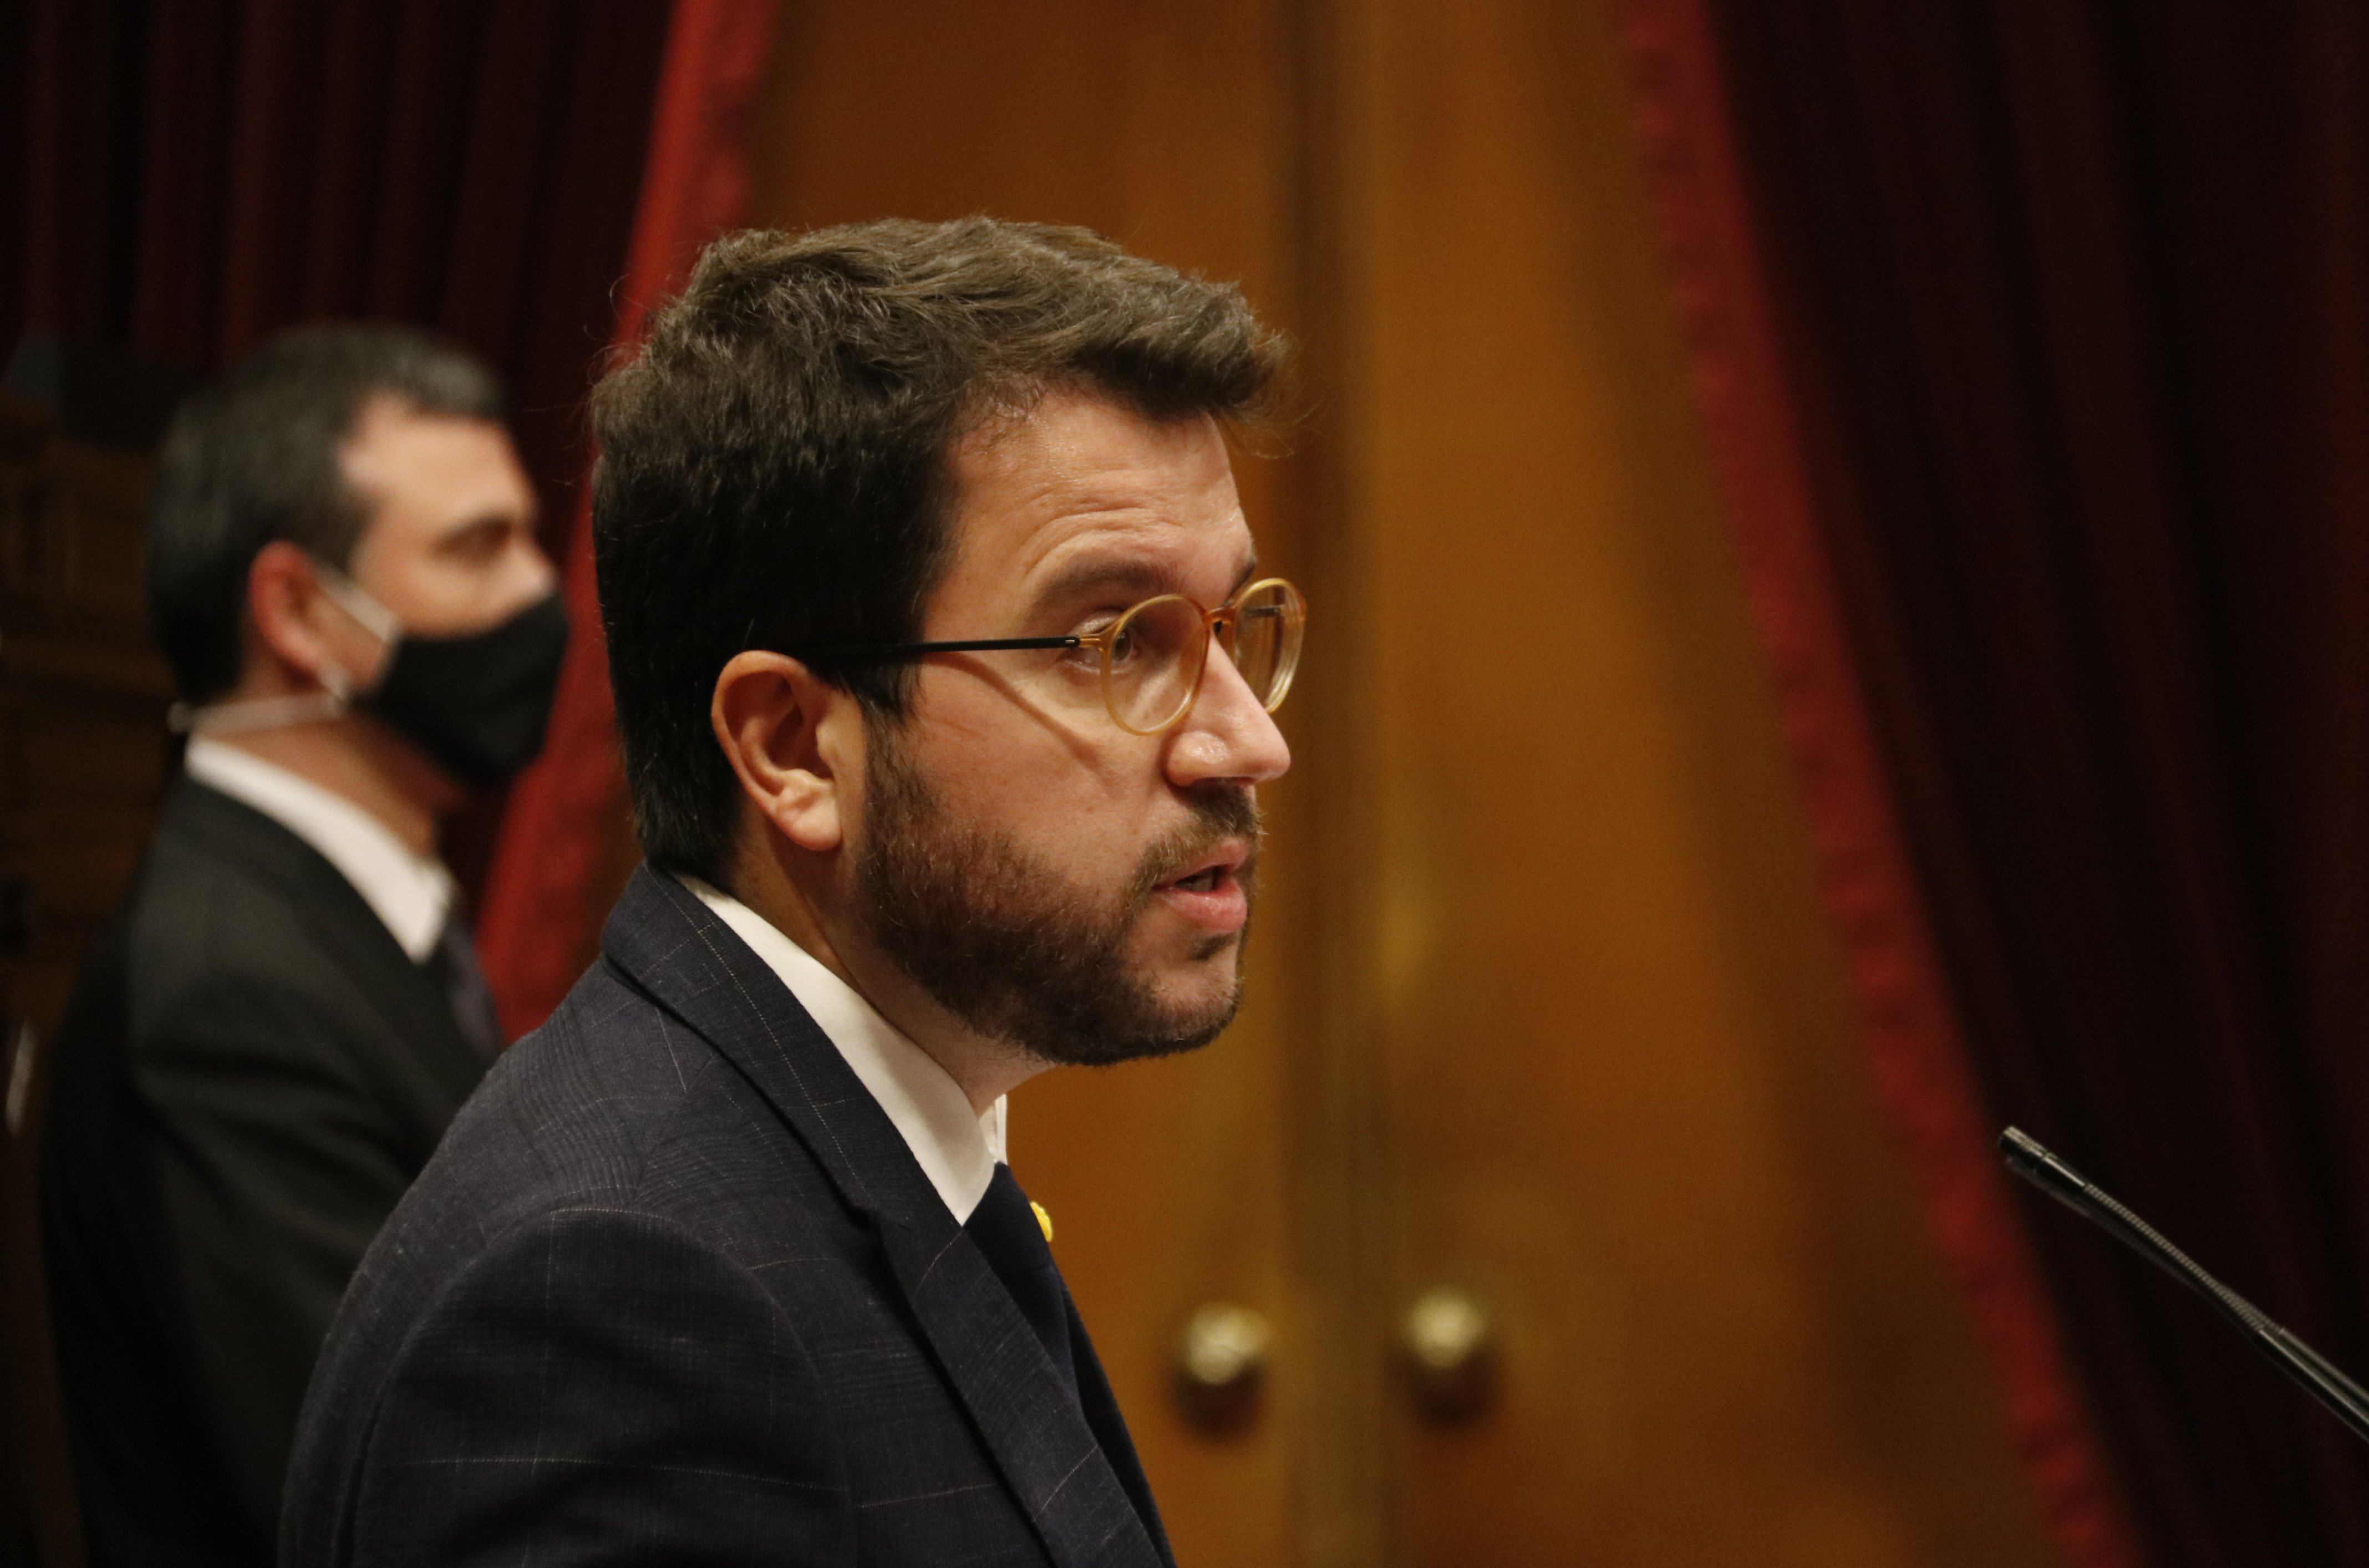 Aragonès aposta per un Govern amb aliances "més enllà de l'independentisme"